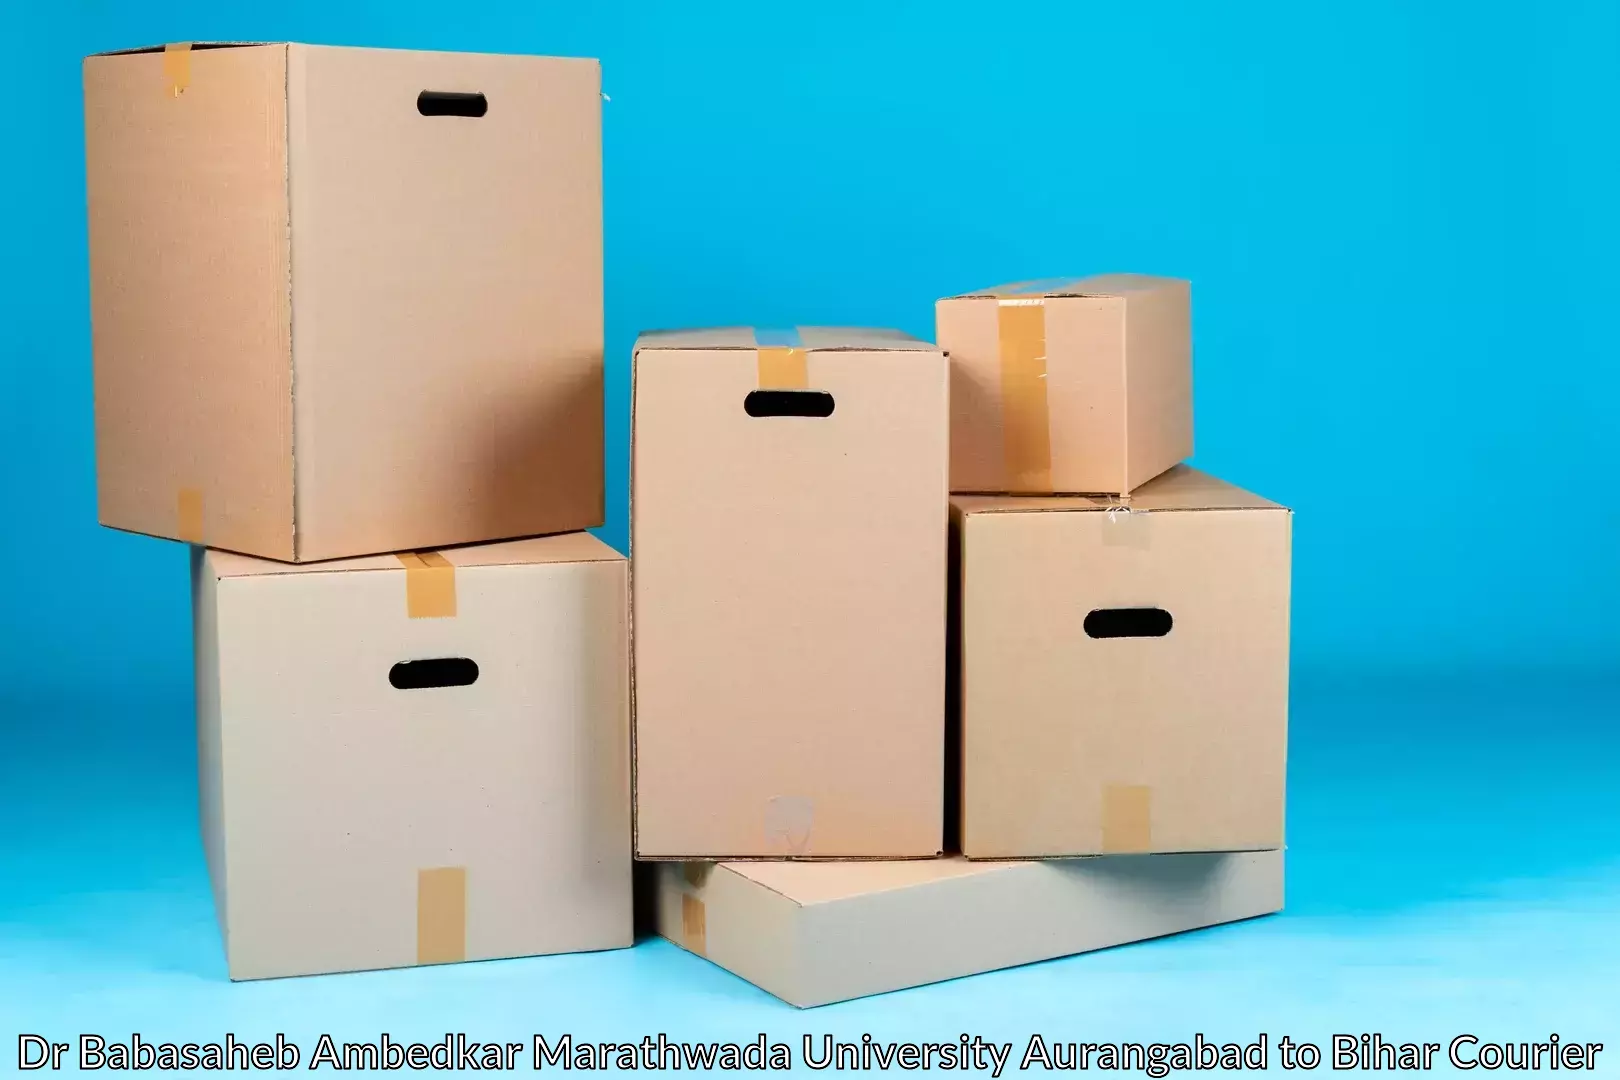 Professional packing services Dr Babasaheb Ambedkar Marathwada University Aurangabad to Sandesh